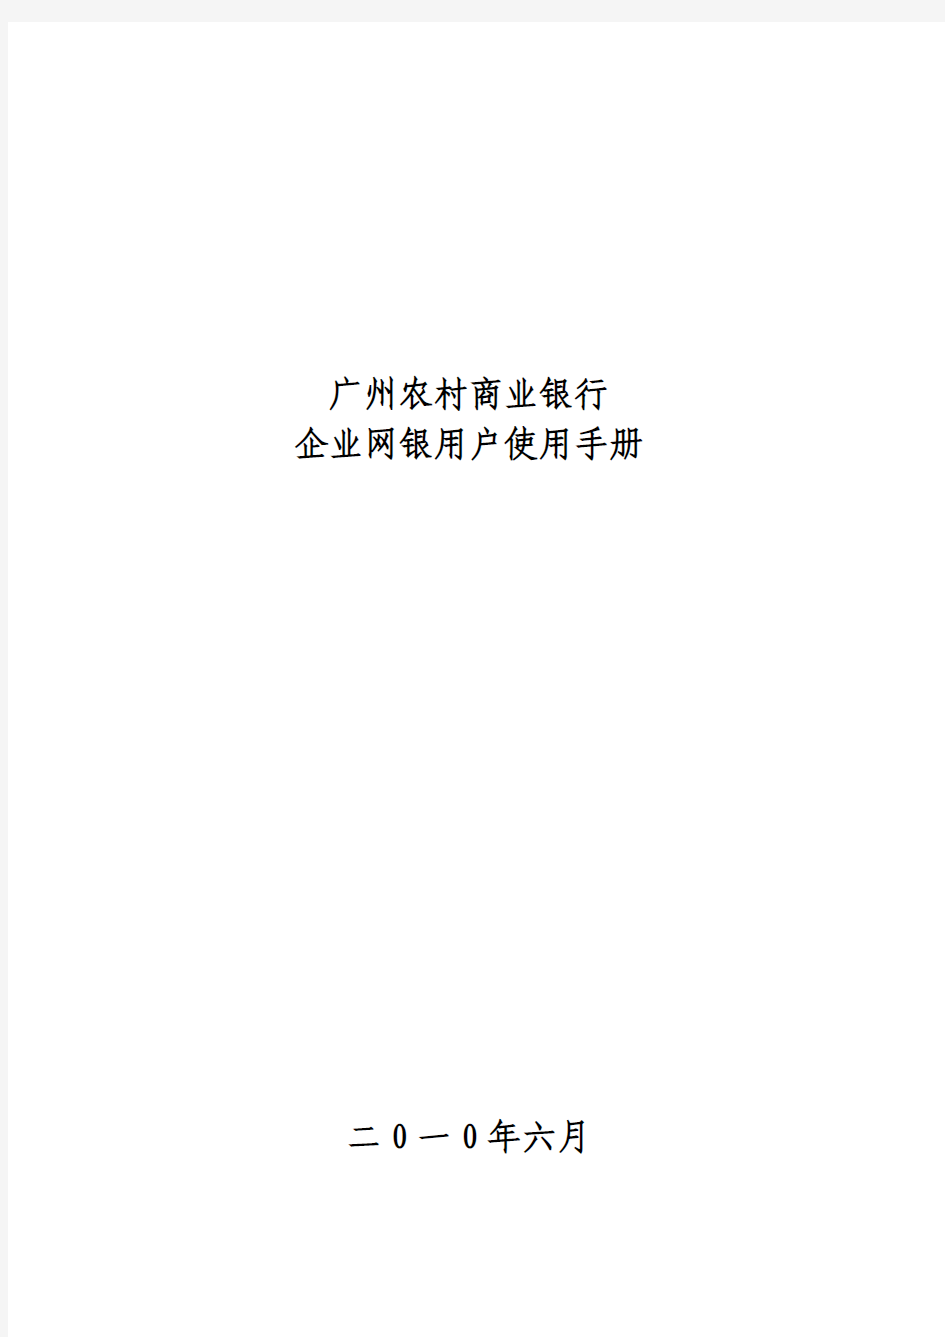 广州农村商业银行 企业网银用户使用手册